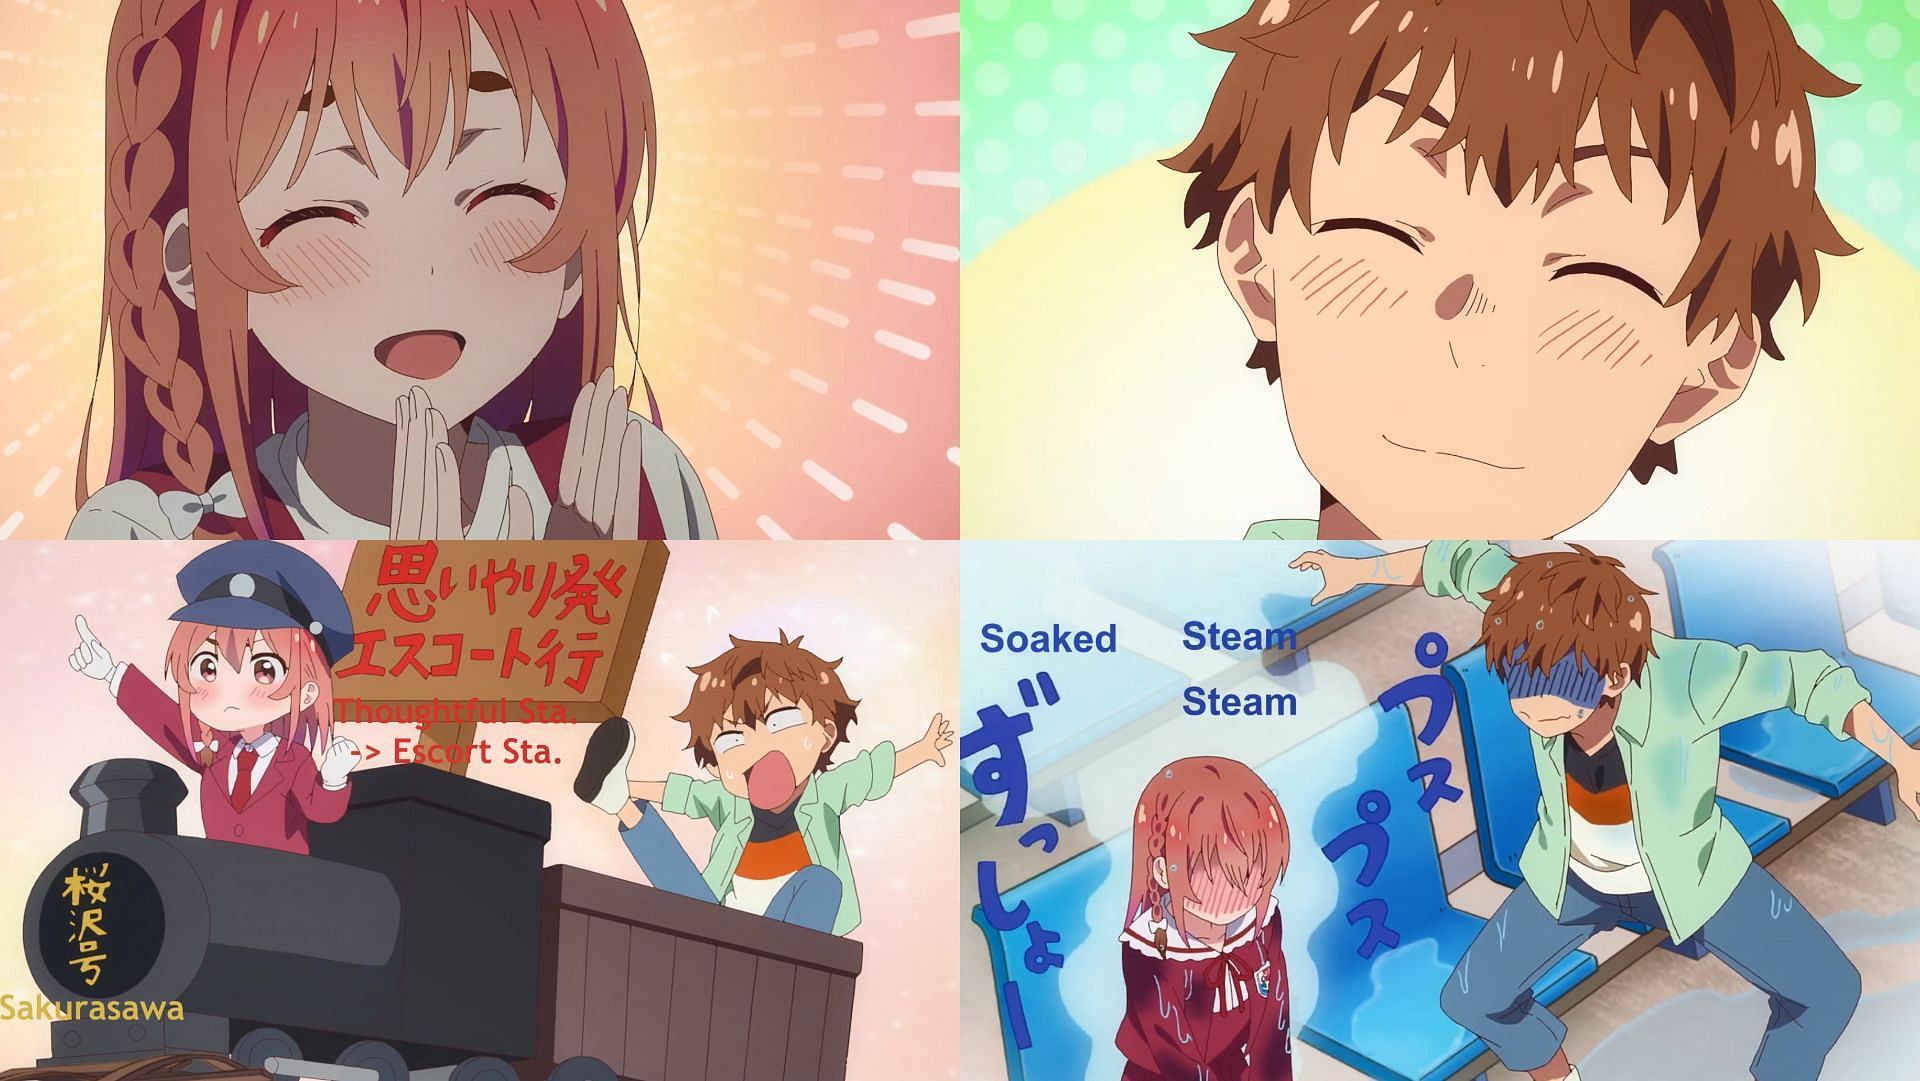 Rent a Girlfriend Season 2 Episode 1 Preview lançado - All Things Anime